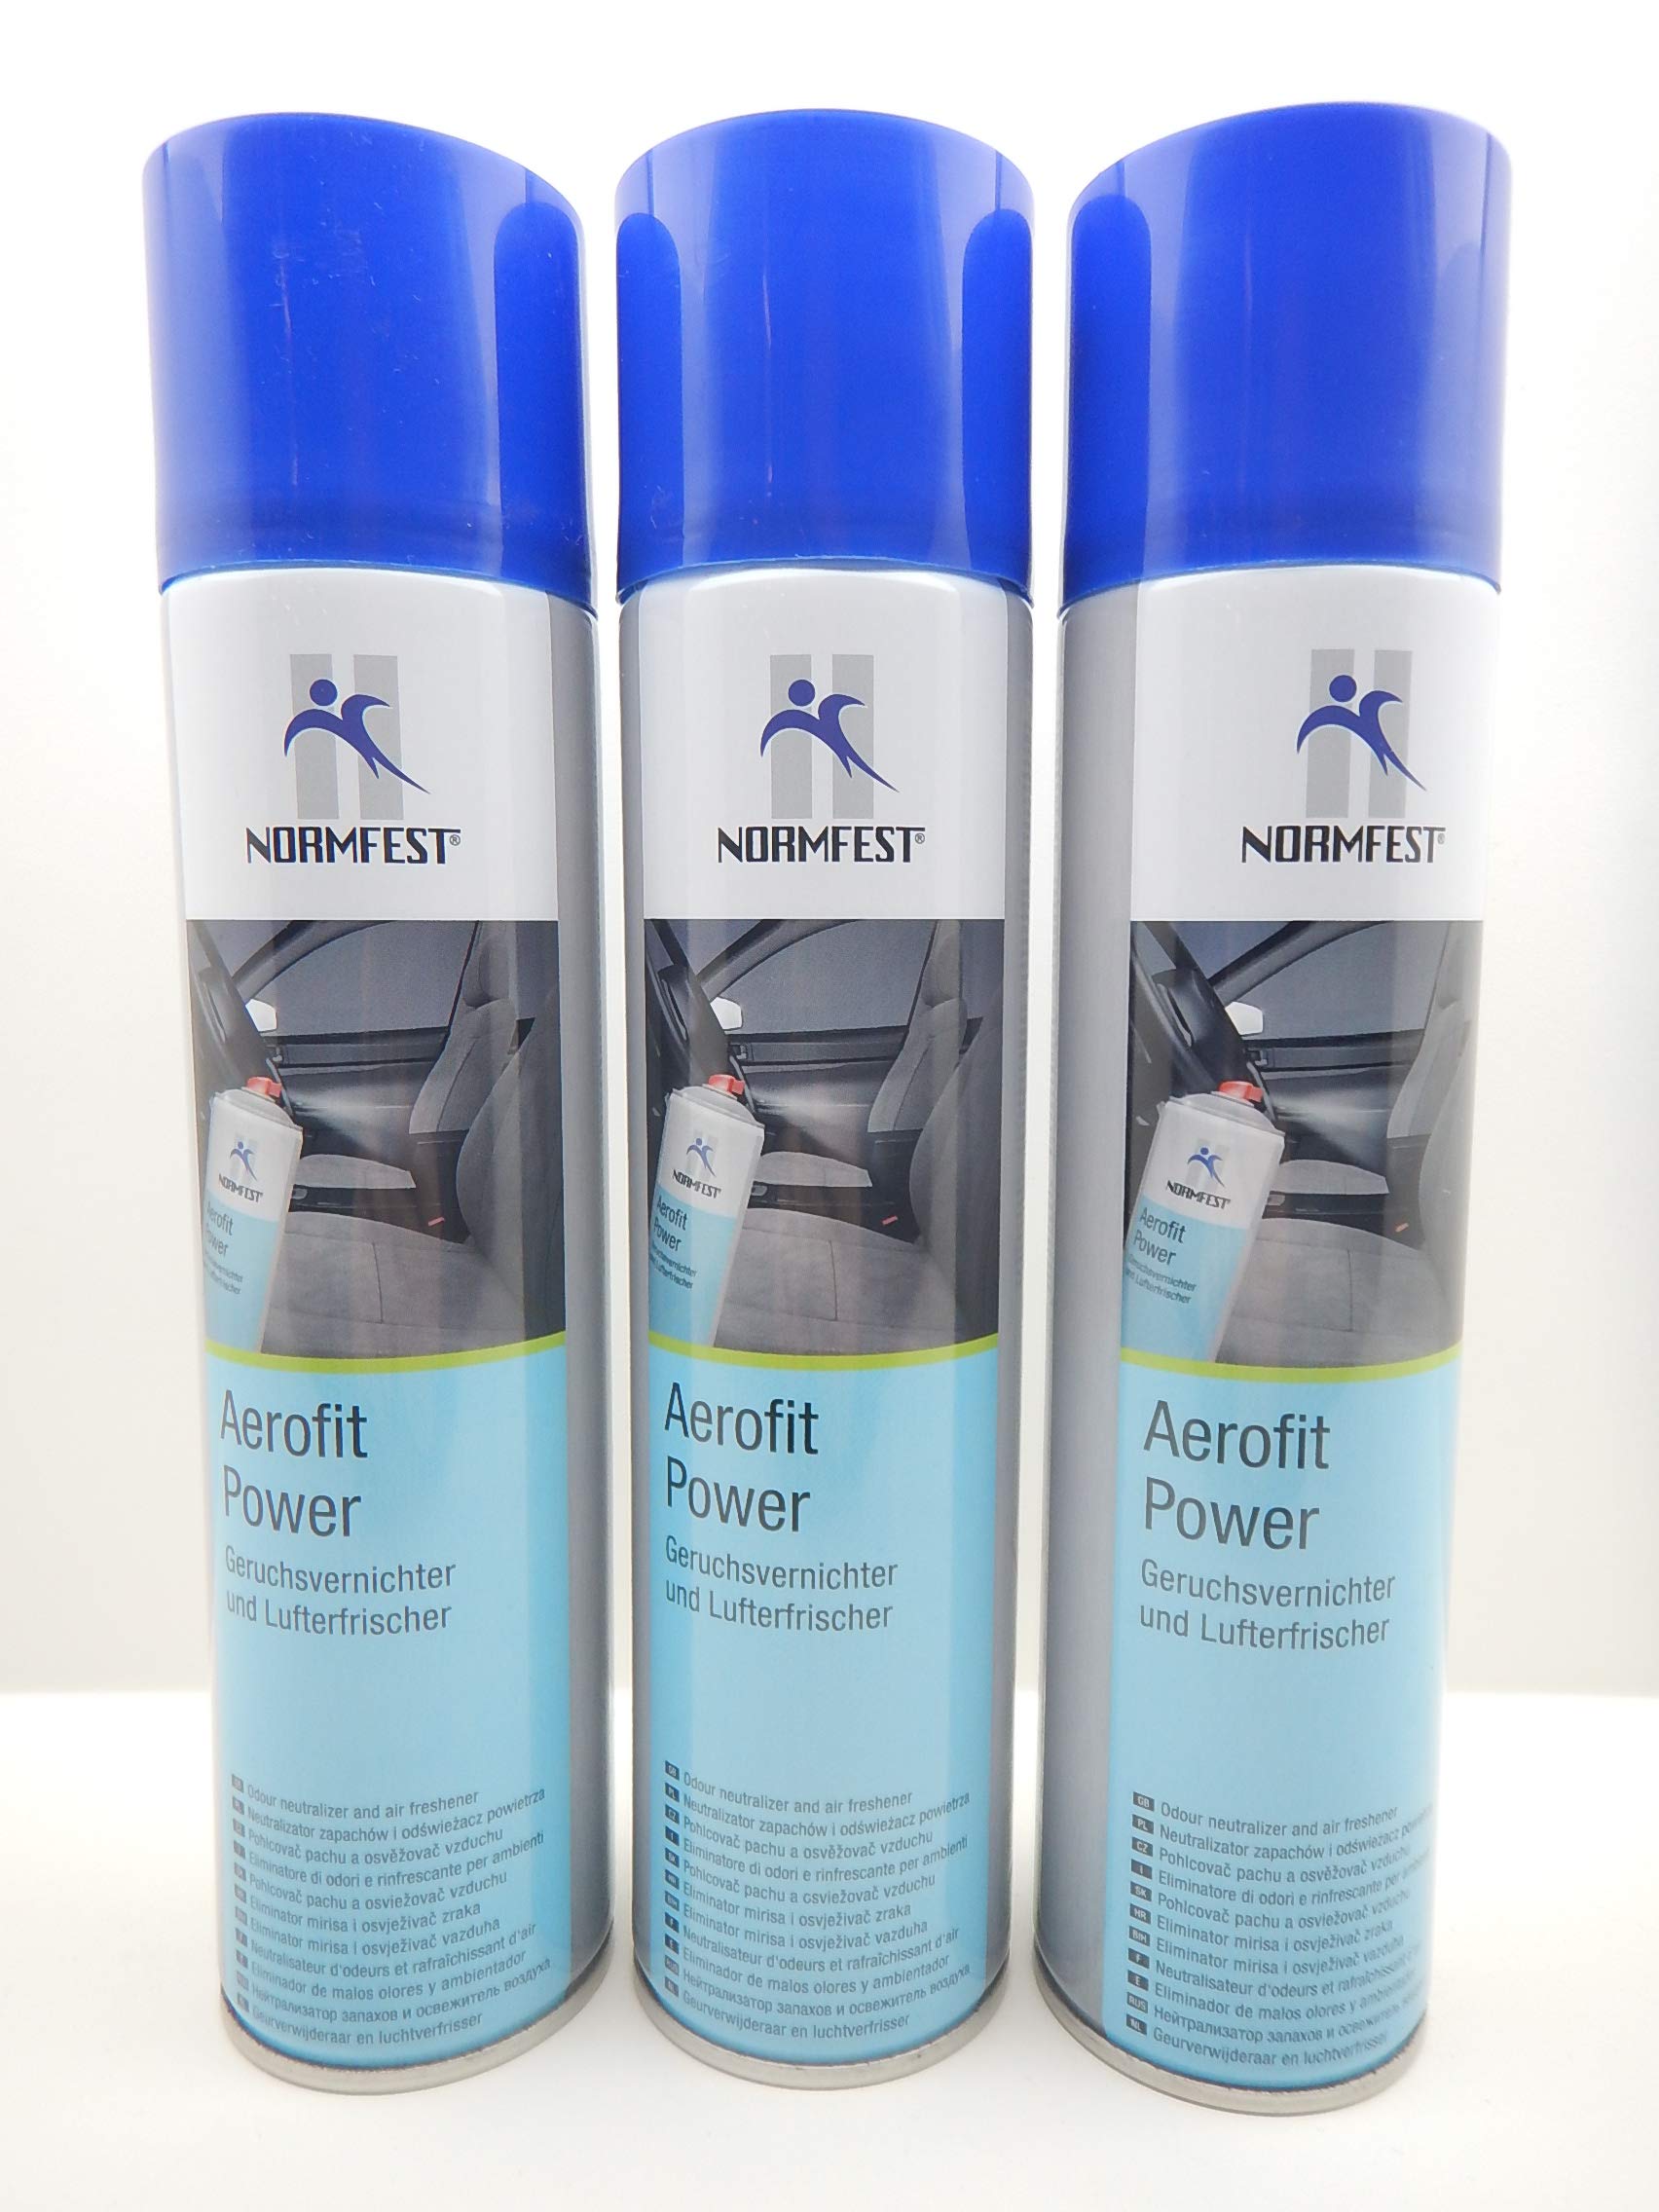 Normfest 3X Aerofit Power Lufterfrischer Himbeer Geruchsvernichter Spray 400ml / pro Dose inkl. HS von Normfest